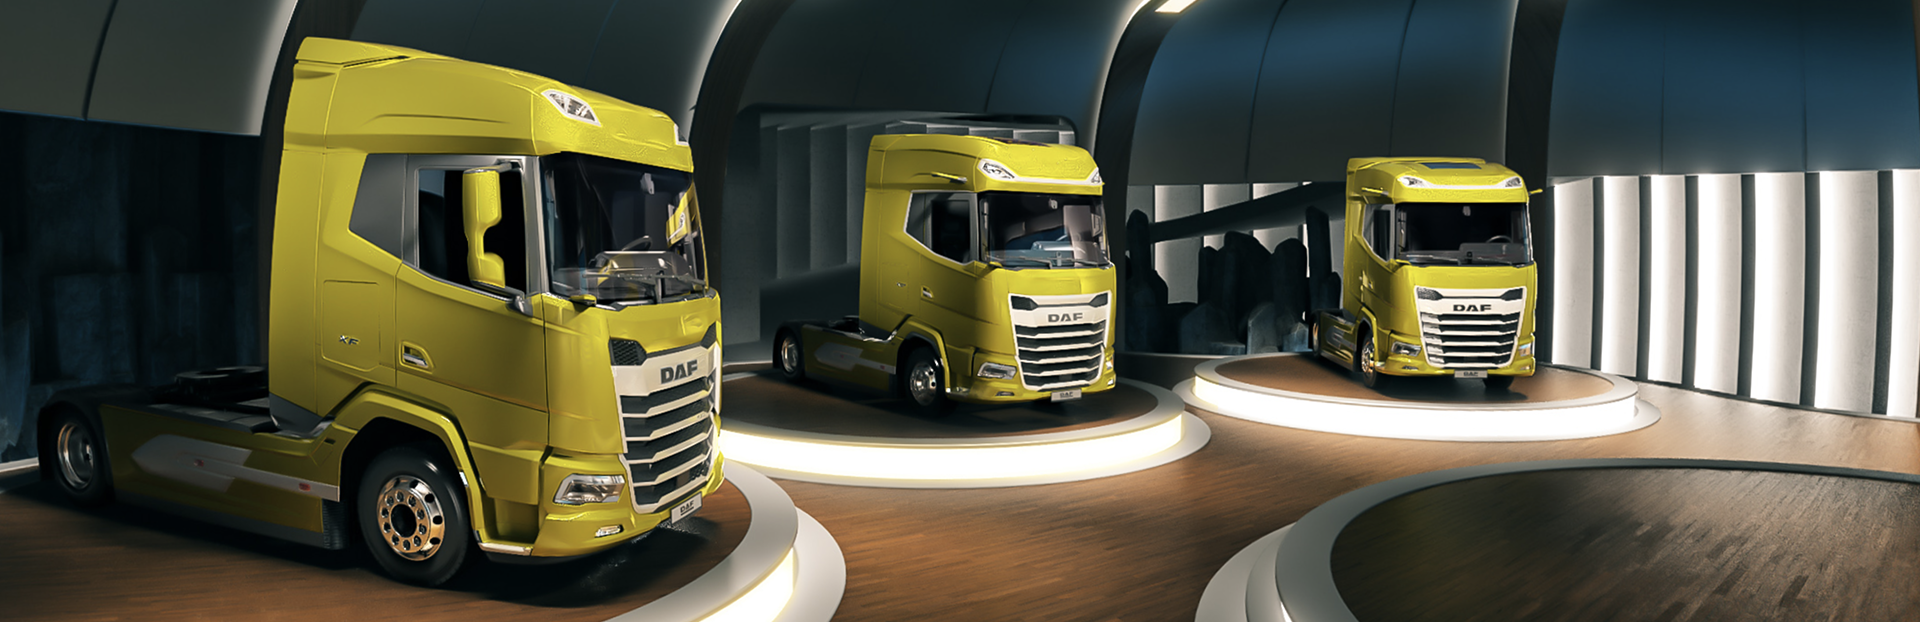 euro truck simulator 2 best starting city